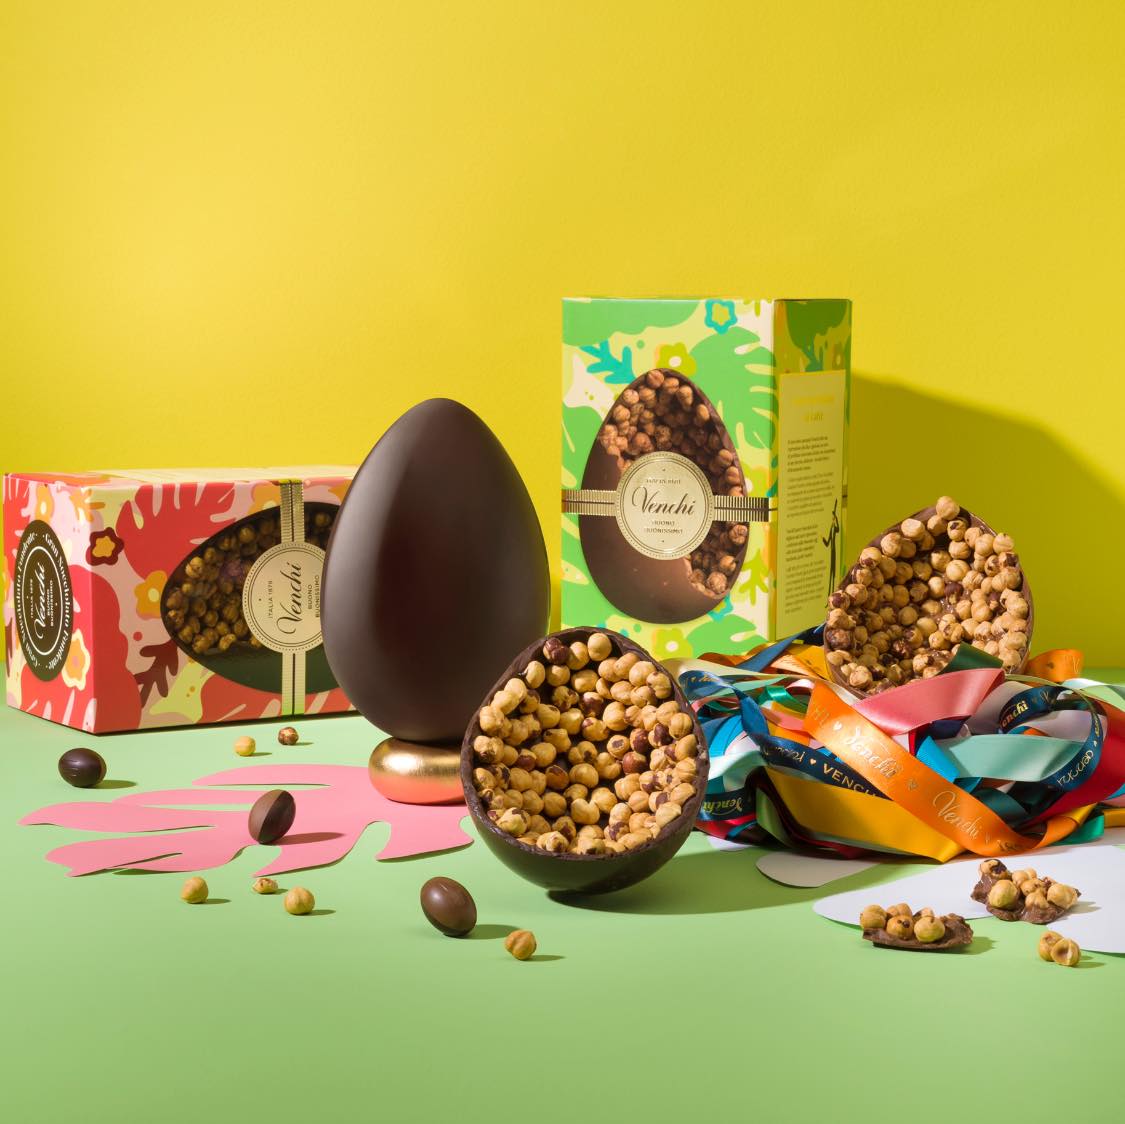 復活節長假期開始了🐣！你準備好巧克力蛋過節了嗎🍫🥚？Venchi的傳統手工原粒榛子巧克力蛋伴你和家人渡過一個快樂的復活節週末🐰！